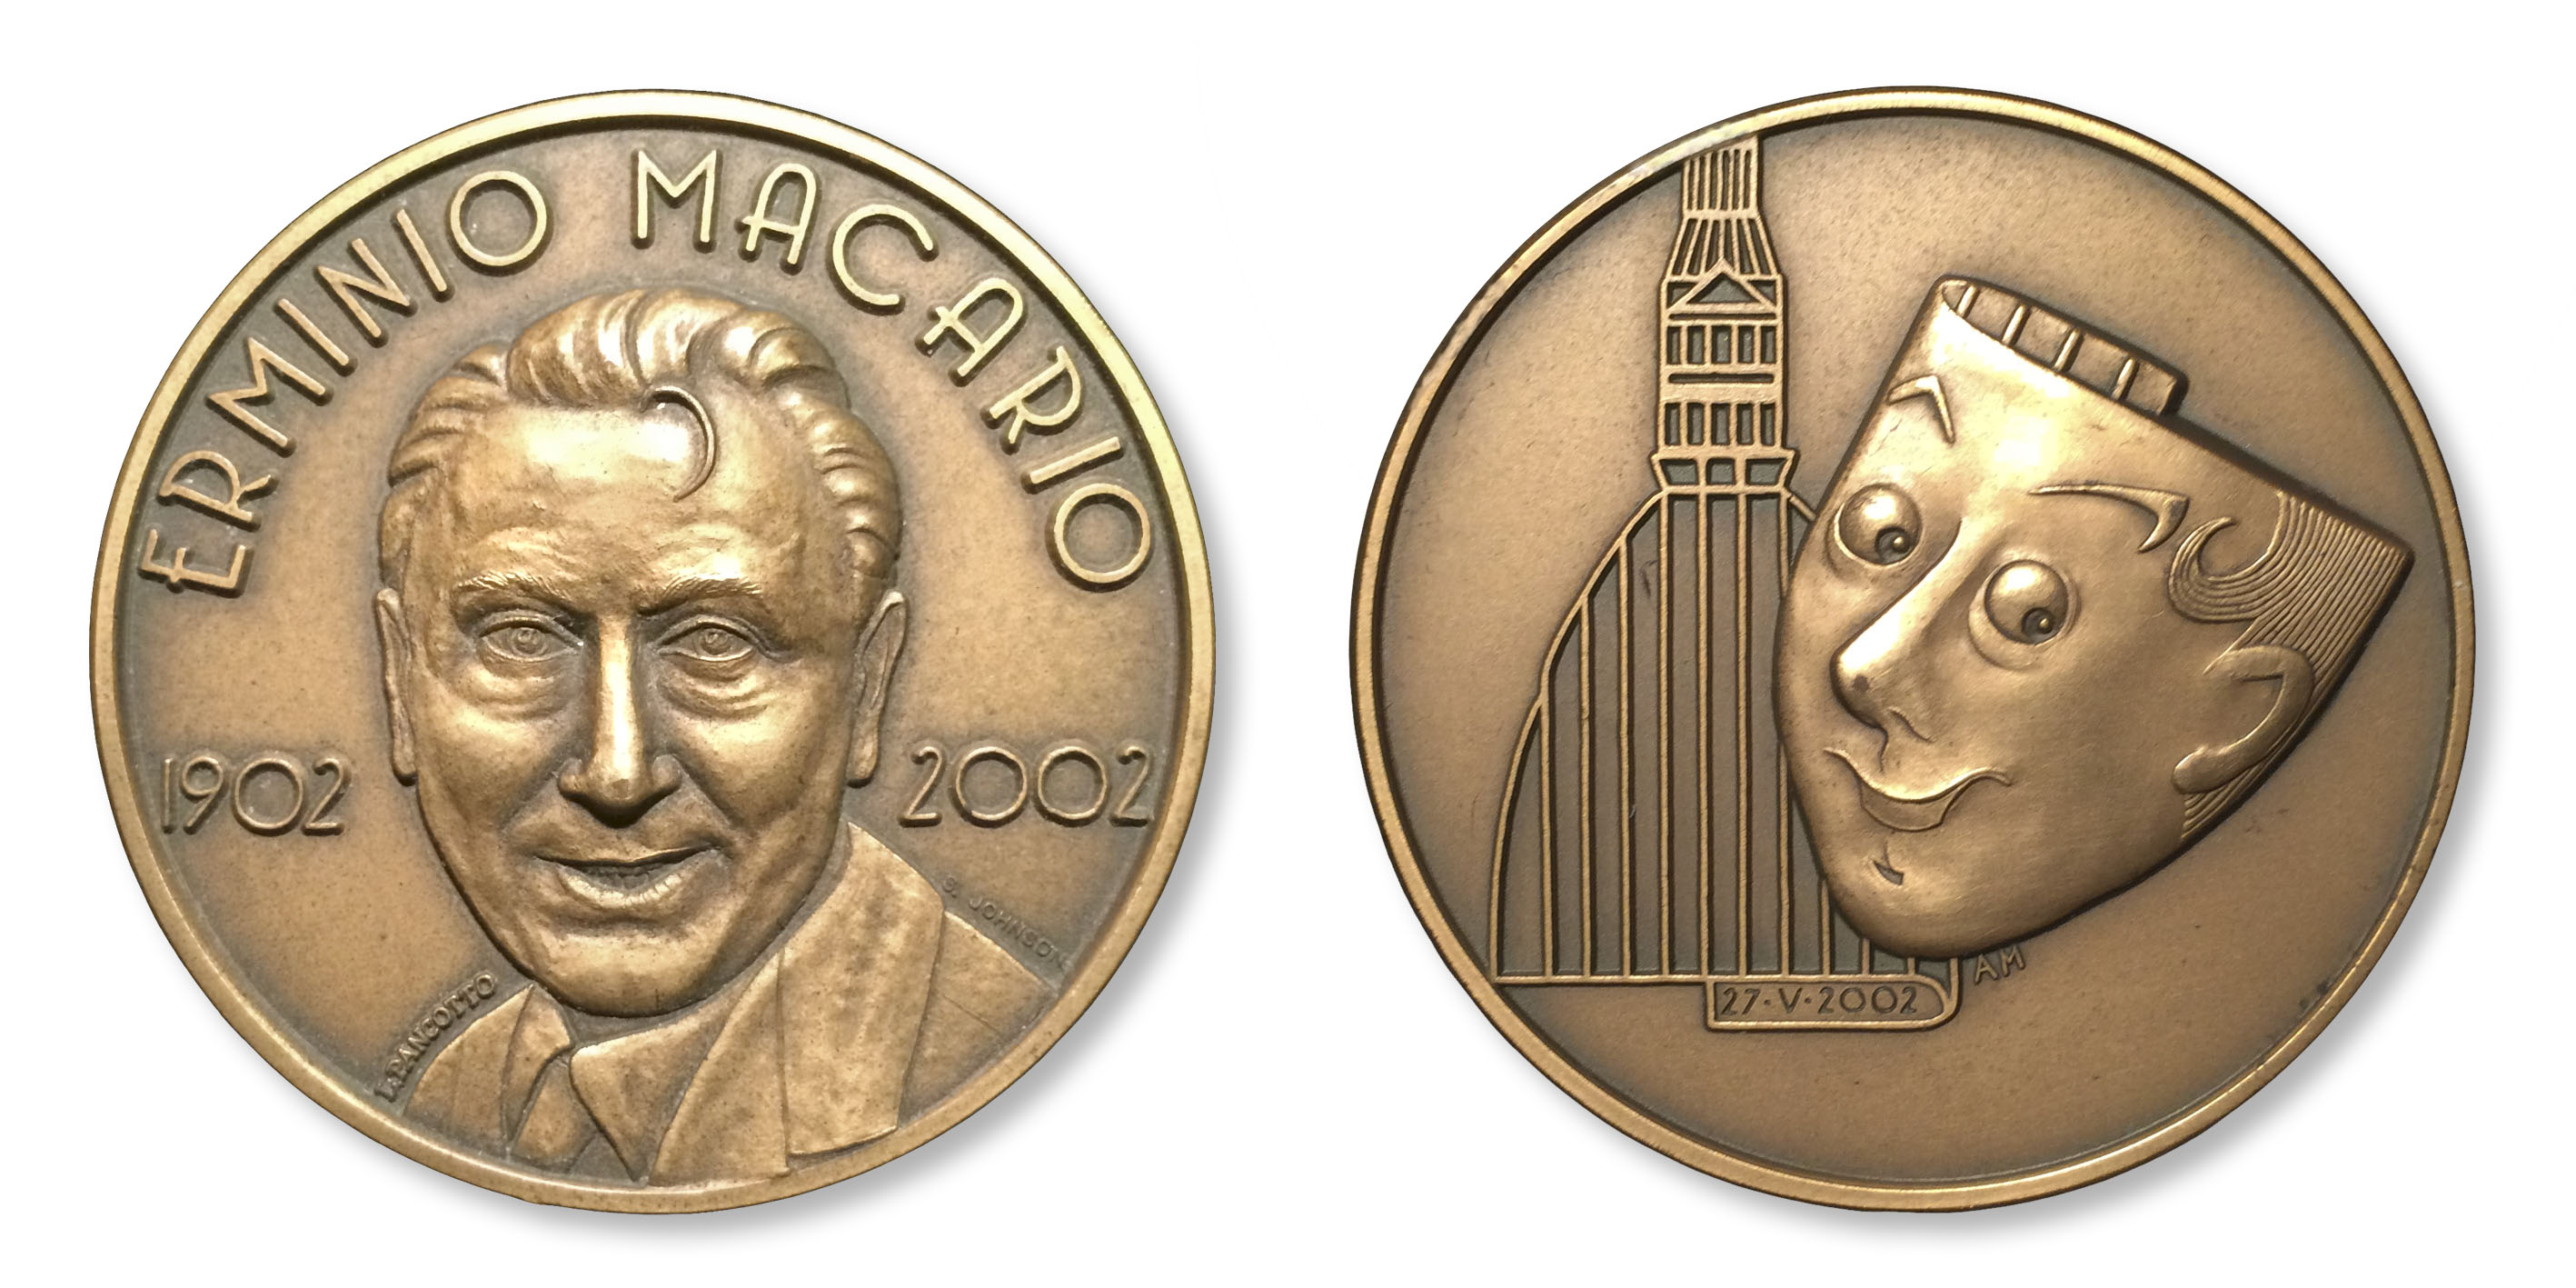 La medaglia del Premio speciale Erminio Macario modellata da Loredana Pancotto (bronzo, mm 50)